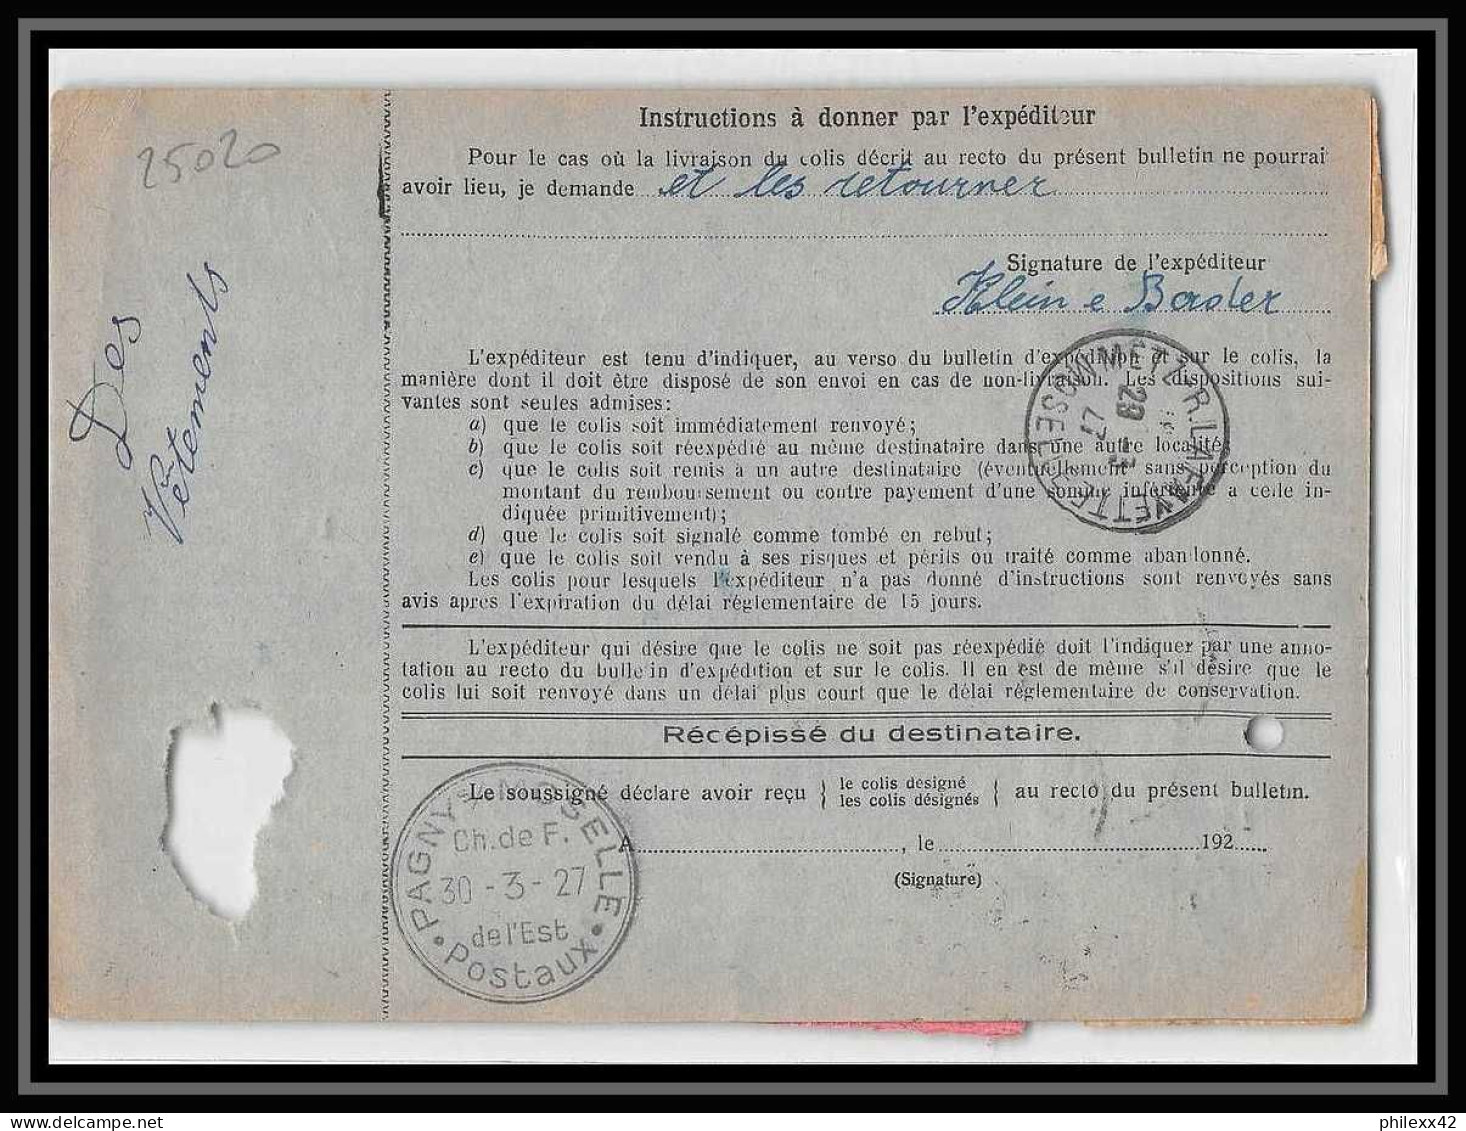 25020 Bulletin D'expédition France Colis Postaux Fiscal Haut Rhin 1927 Guebwiller Semeuse Merson 123 Valeur Déclarée - Briefe U. Dokumente